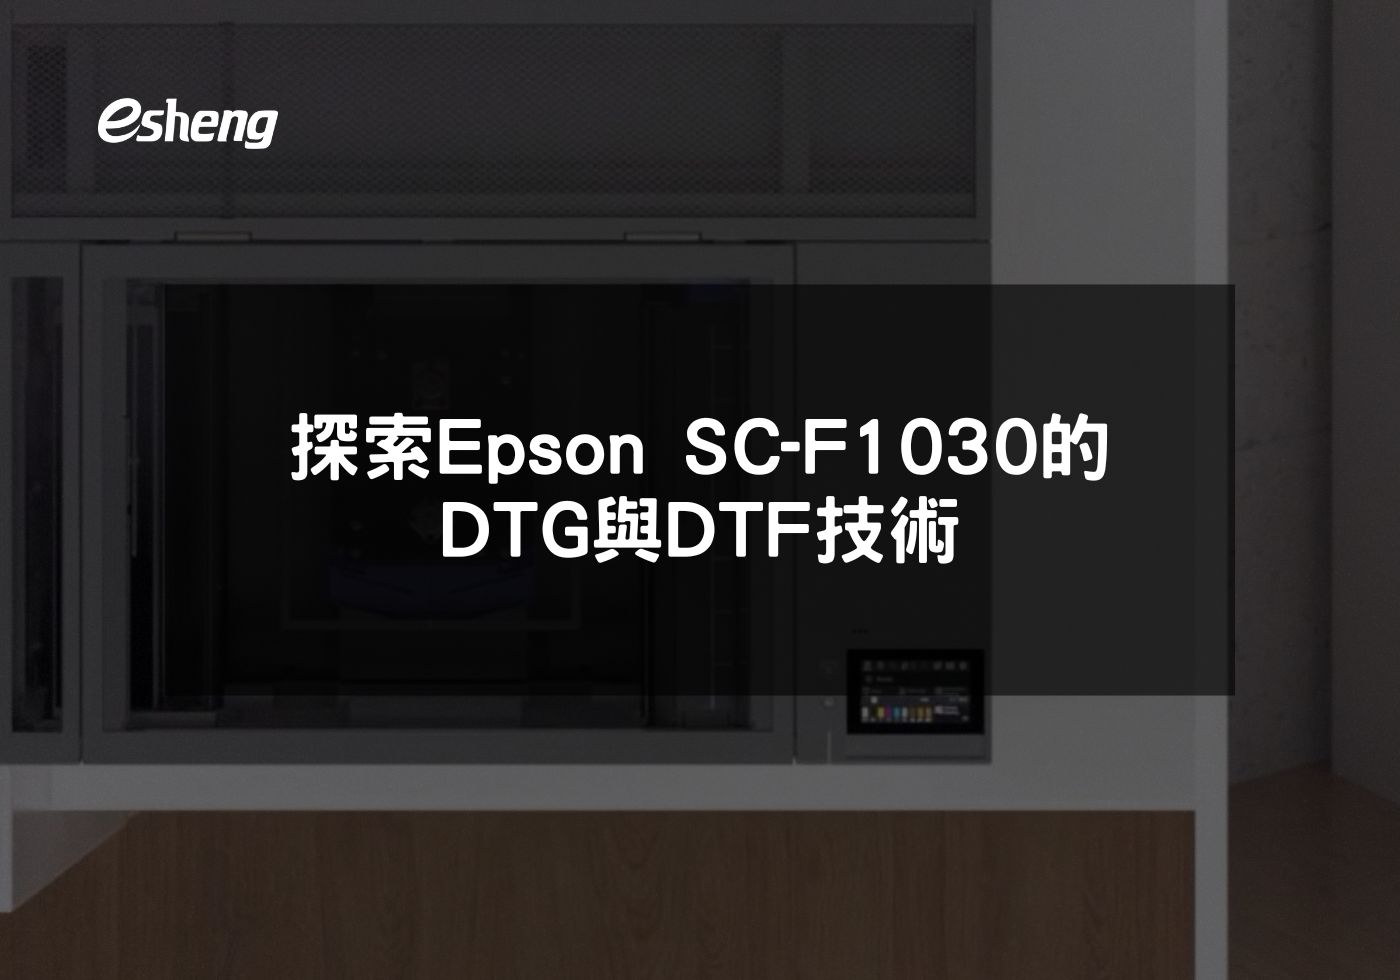 您目前正在查看 創新印刷 探索Epson SC-F1030的DTG與DTF技術